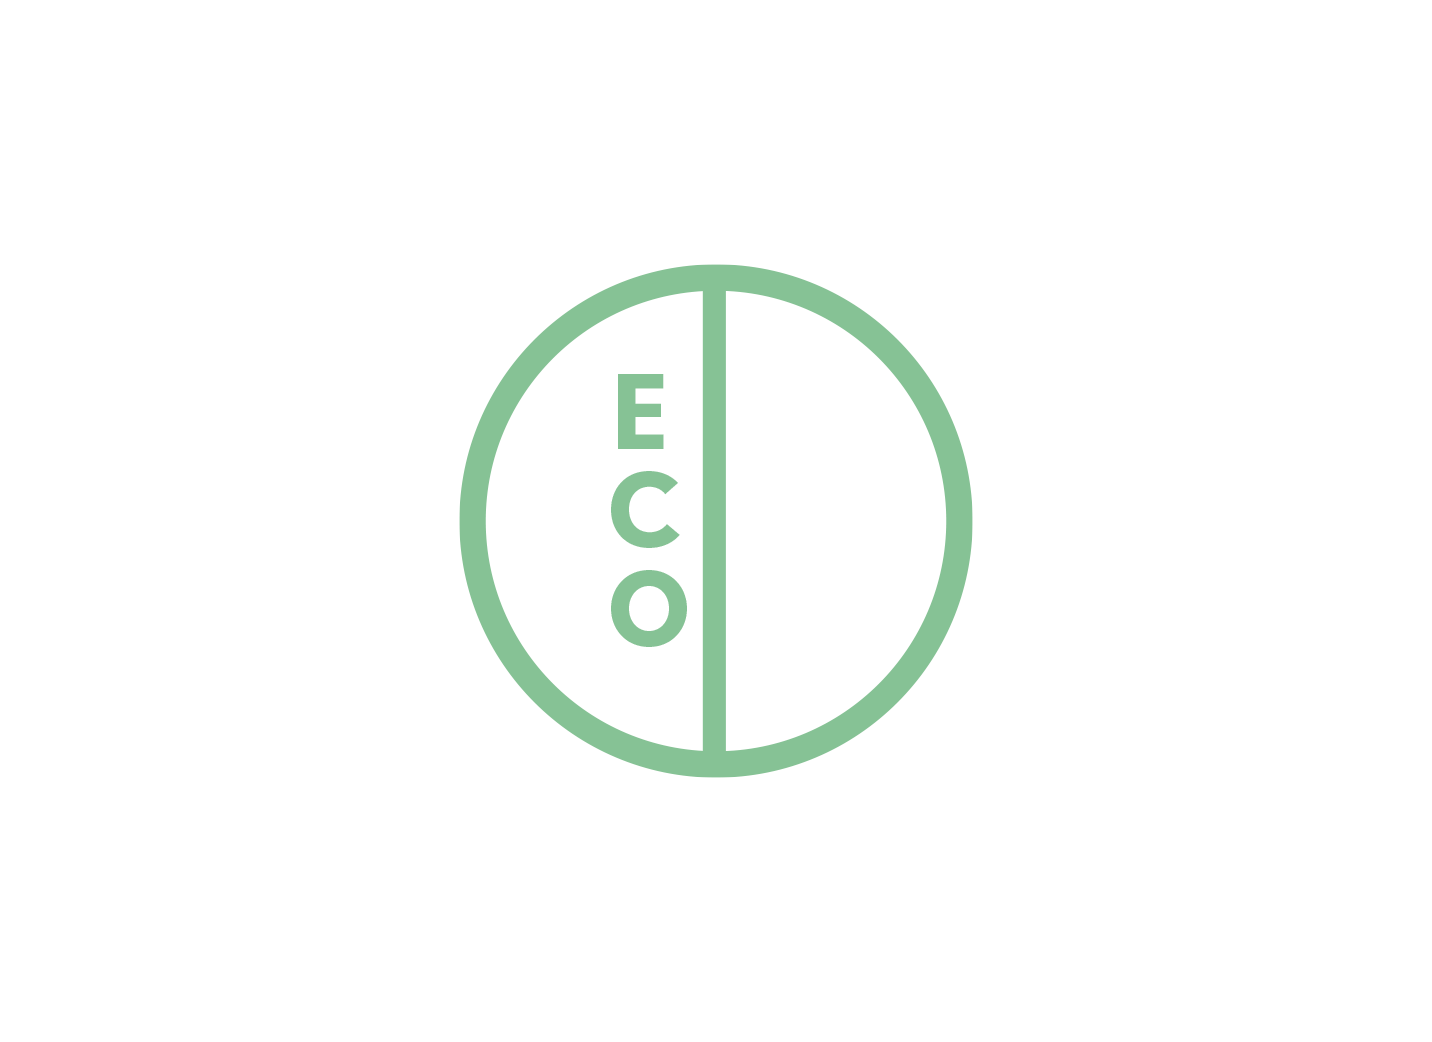 Icono etiqueta eco